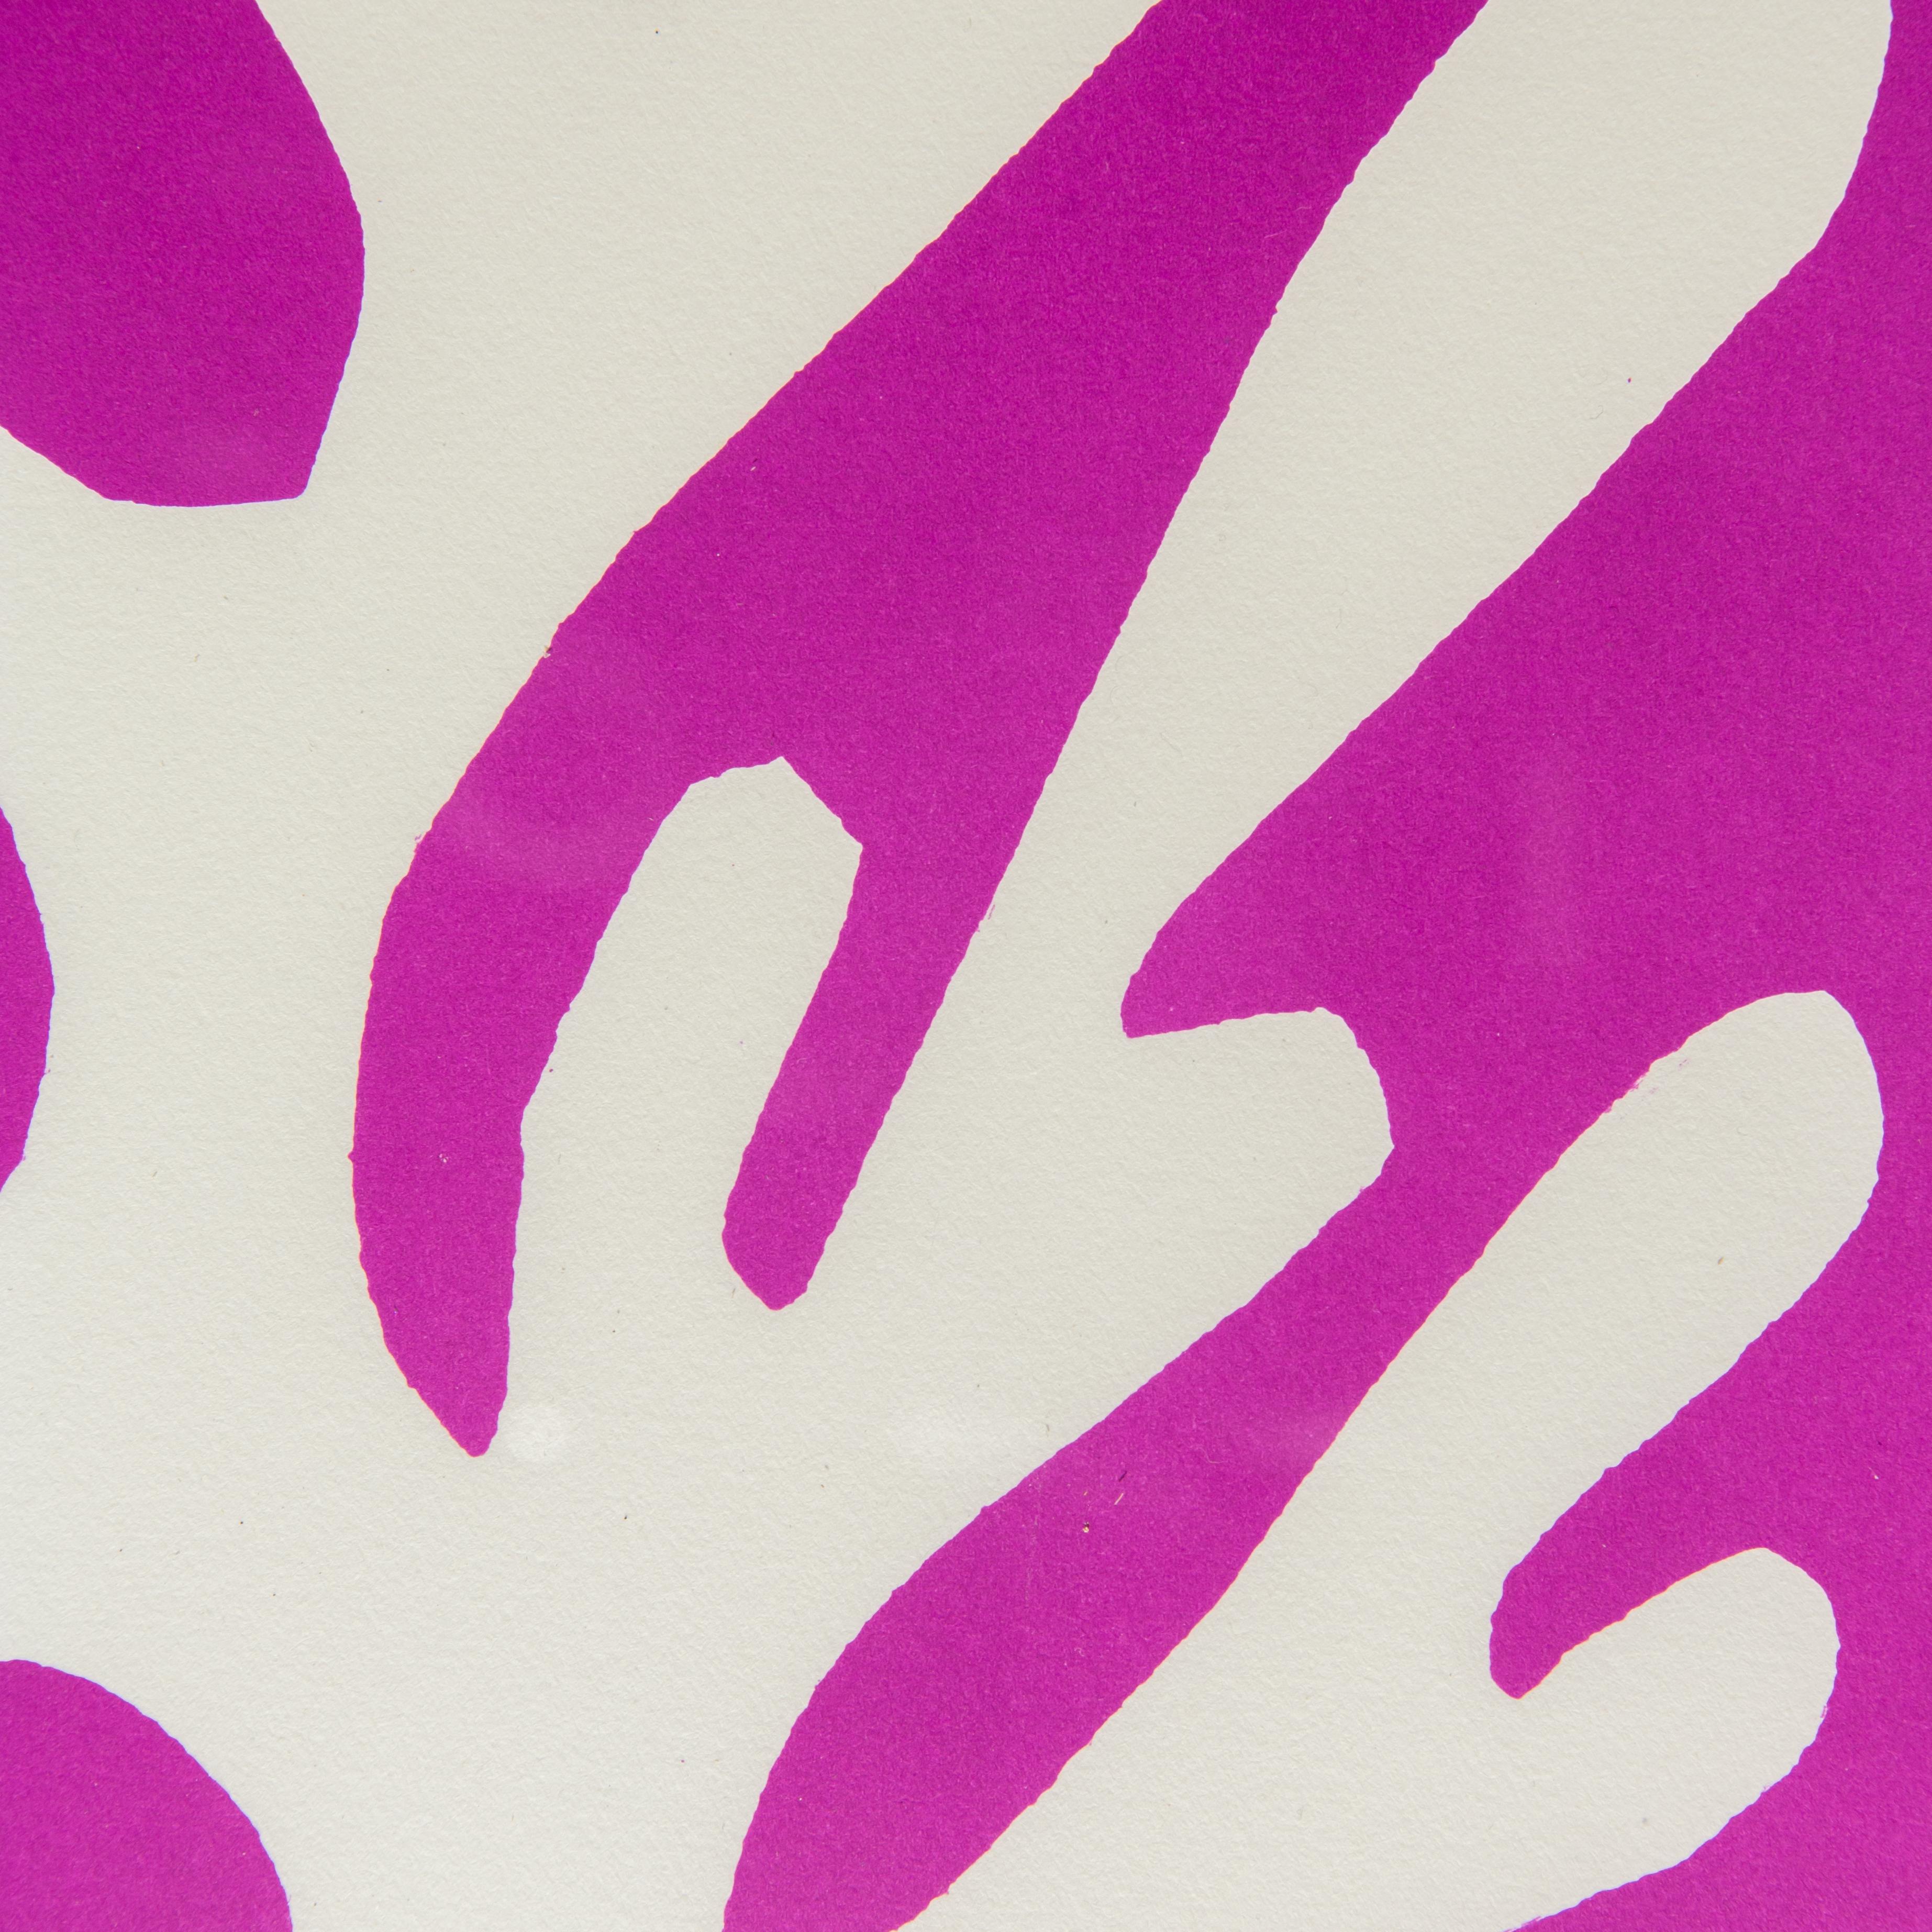 Henri Matisse
Algue Blanche sur fond Viole, 1960
Original-Lithographie
unbekannte Auflagenhöhe
nicht unterzeichnet

59.4 x 42.9 cm
71 x 51 cm (gerahmt)